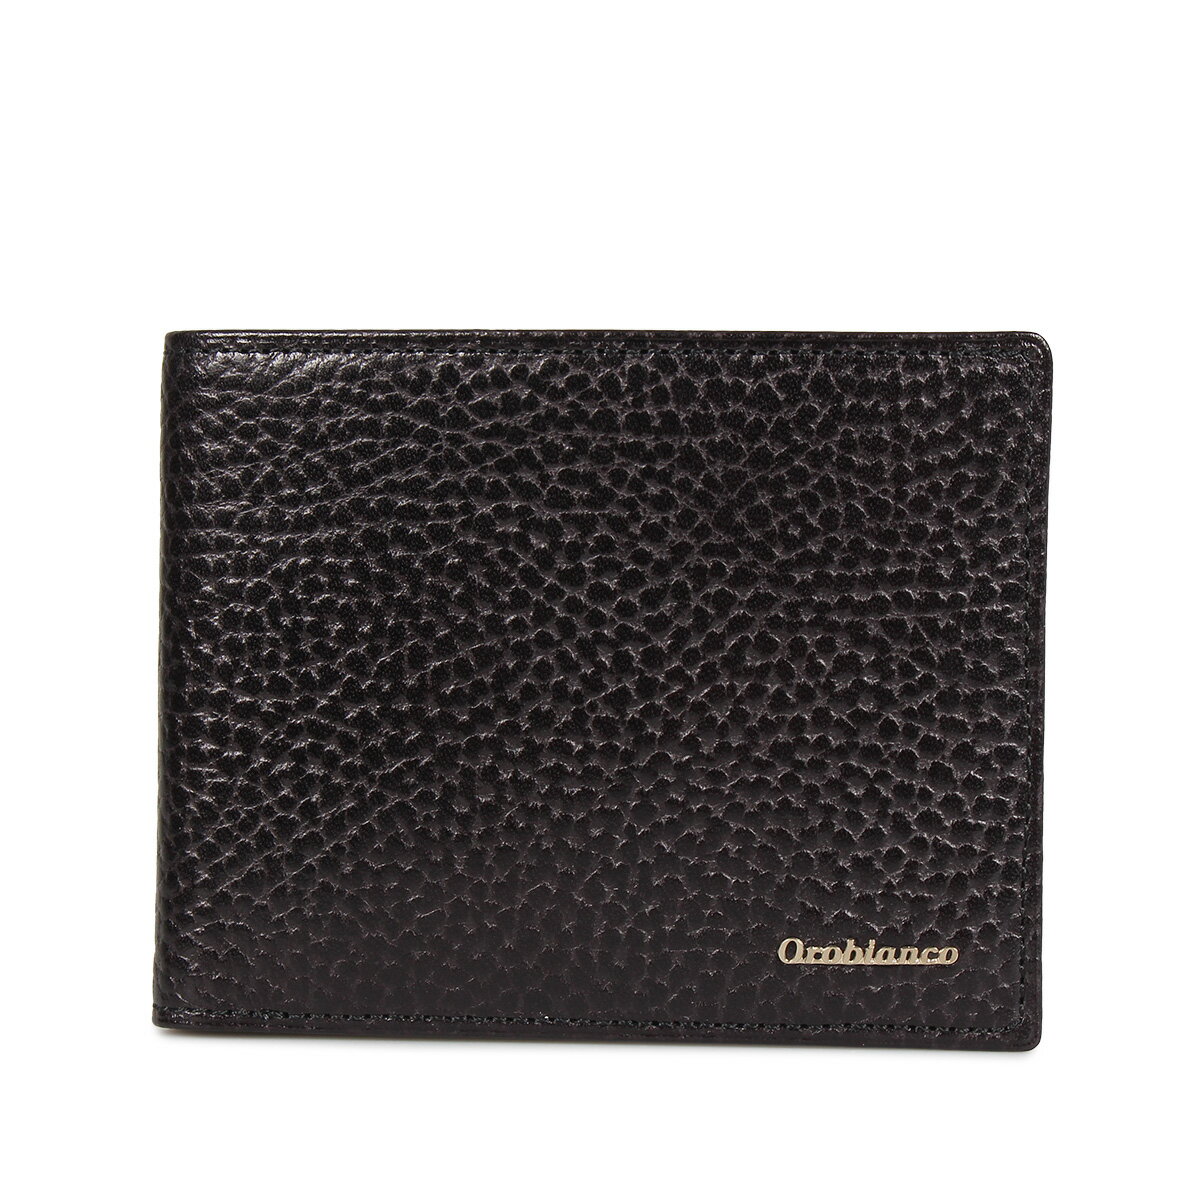 オロビアンコ Orobianco BI-FOLD WALLET オロビアンコ 財布 二つ折り メンズ 本革 ブラック ネイビー ブルー 黒 ORS-022008